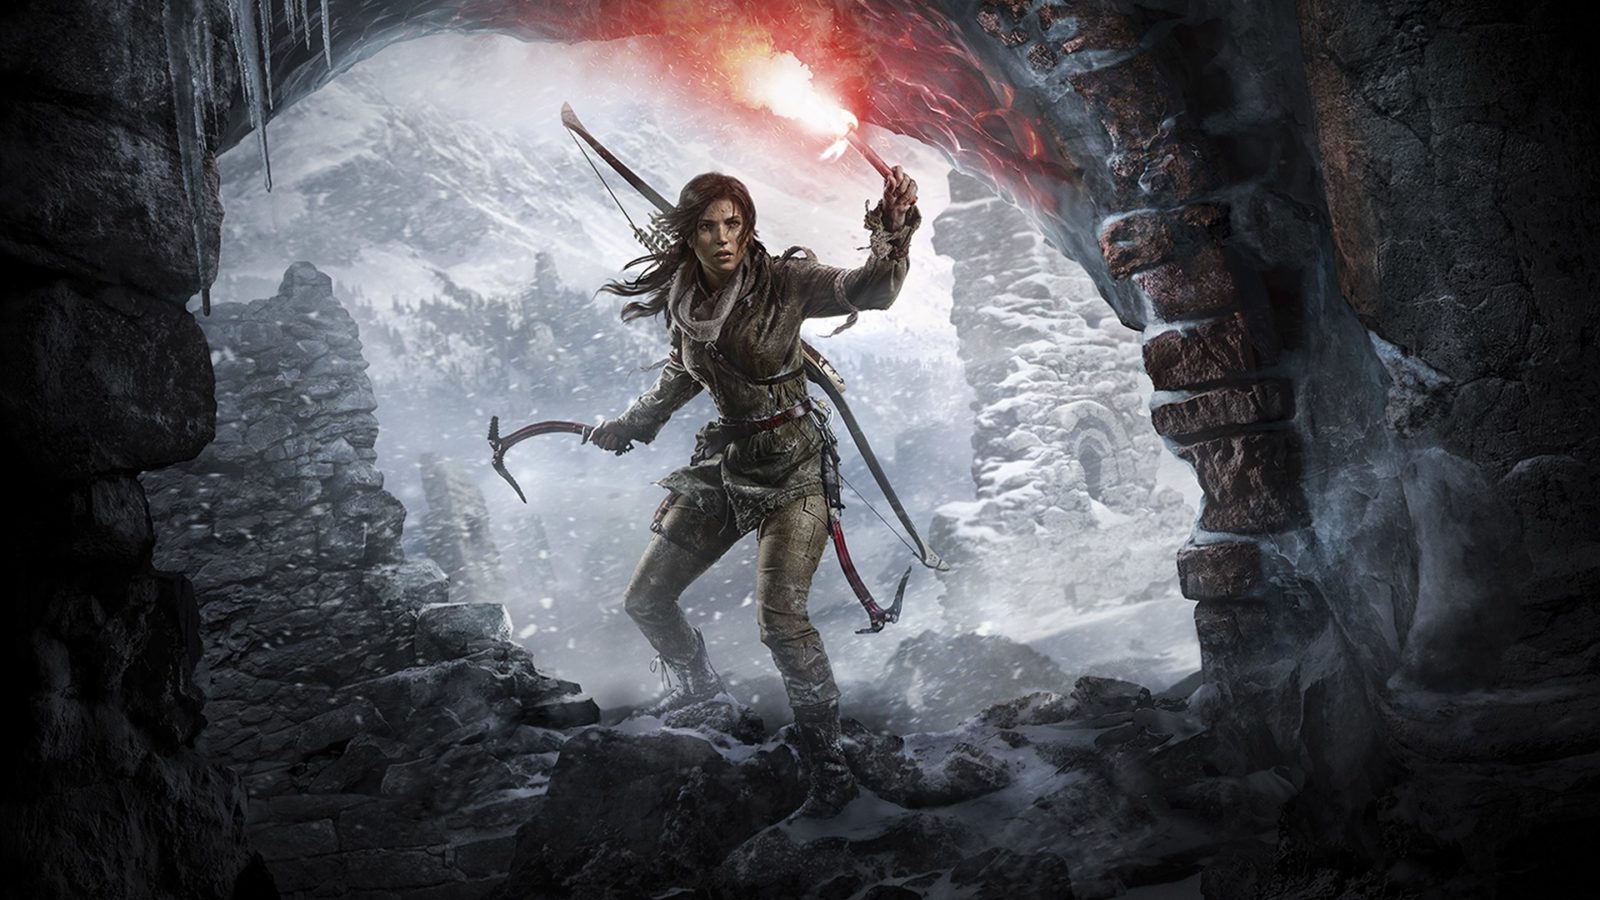 Lekkere deal drie uitstekende Tomb Raider games zijn gratis